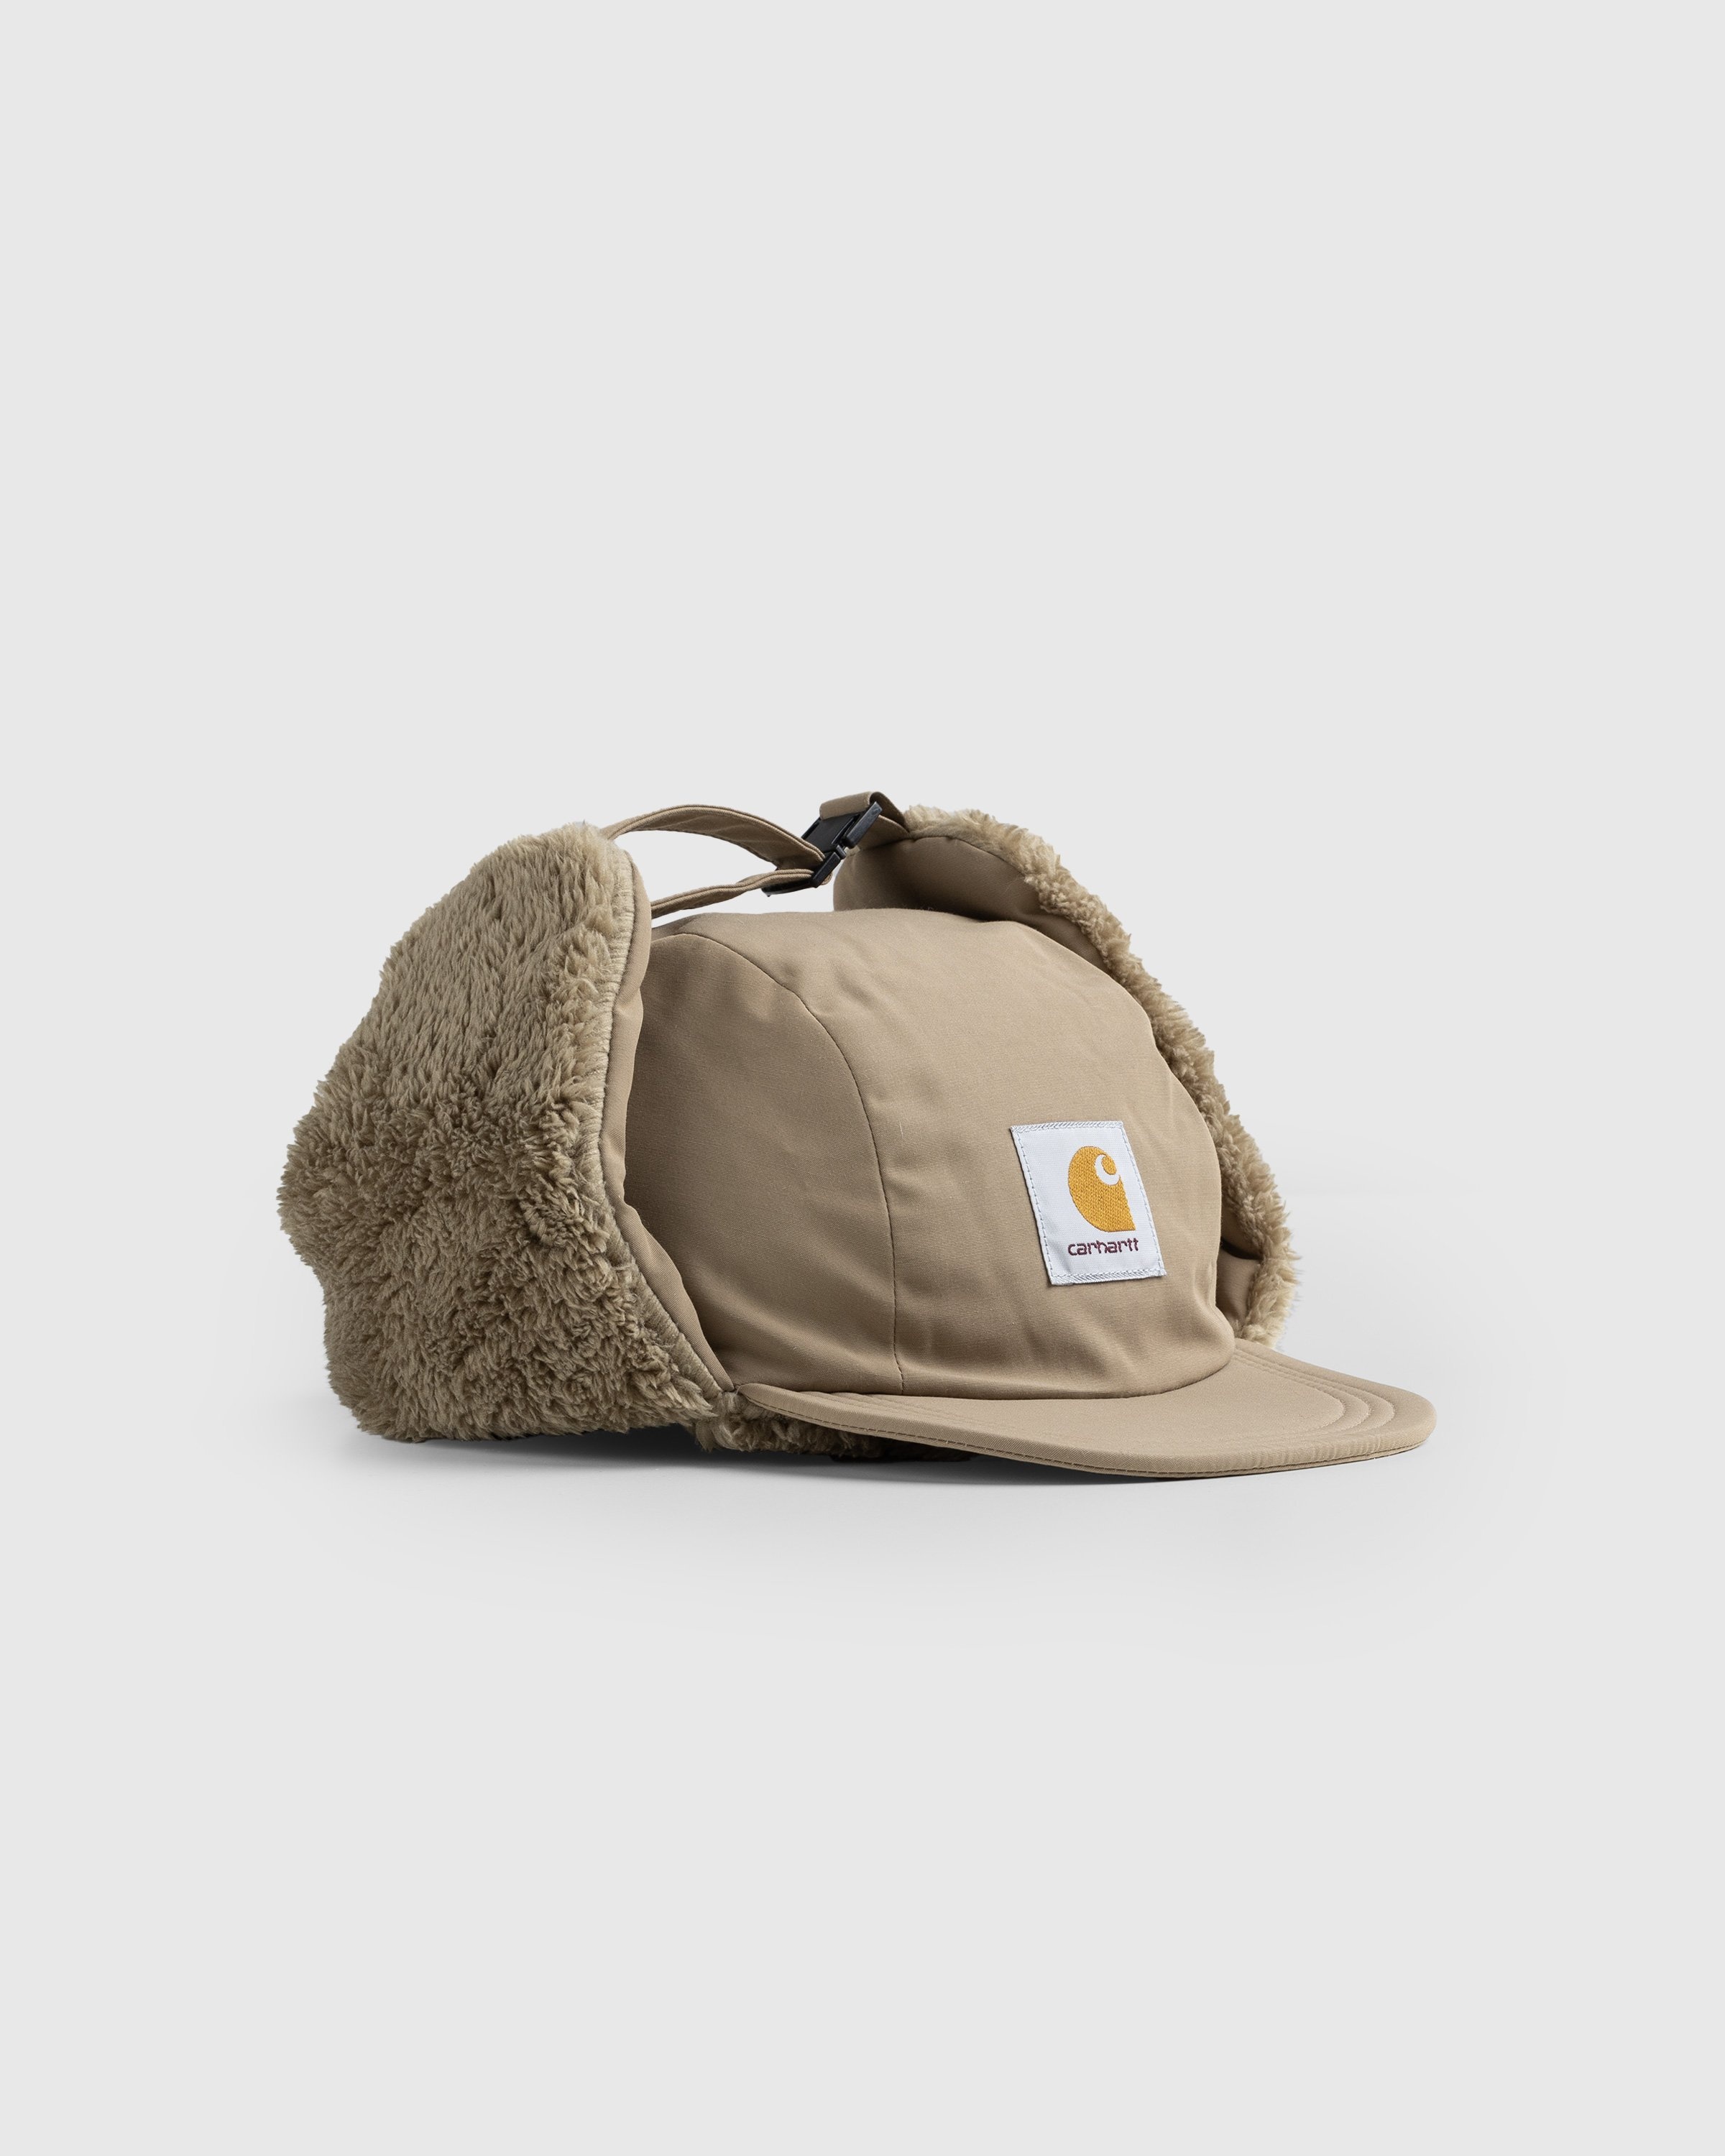 Carhartt WIP – Alberta Cap Brown - Hats - Brown - Image 1